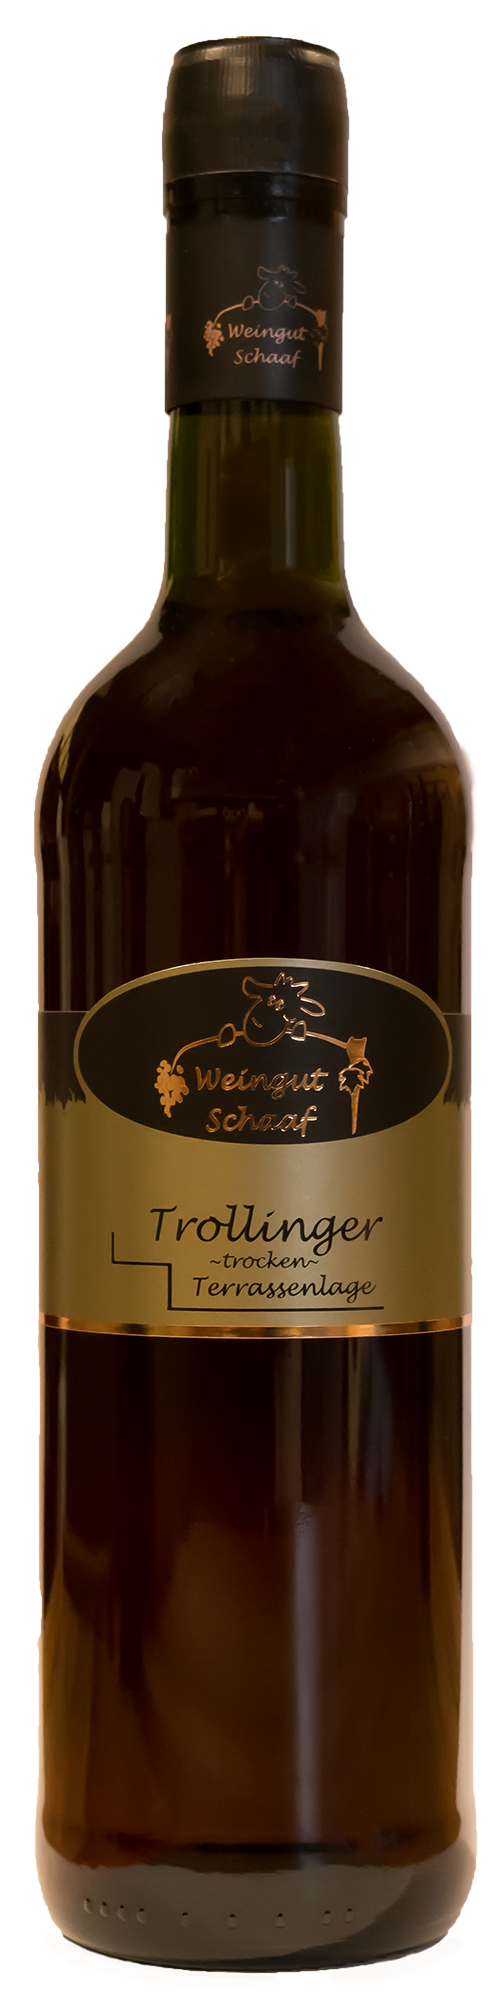 2020 Trollinger trocken 0,75 L Terrassenlage - Weingut Schaaf